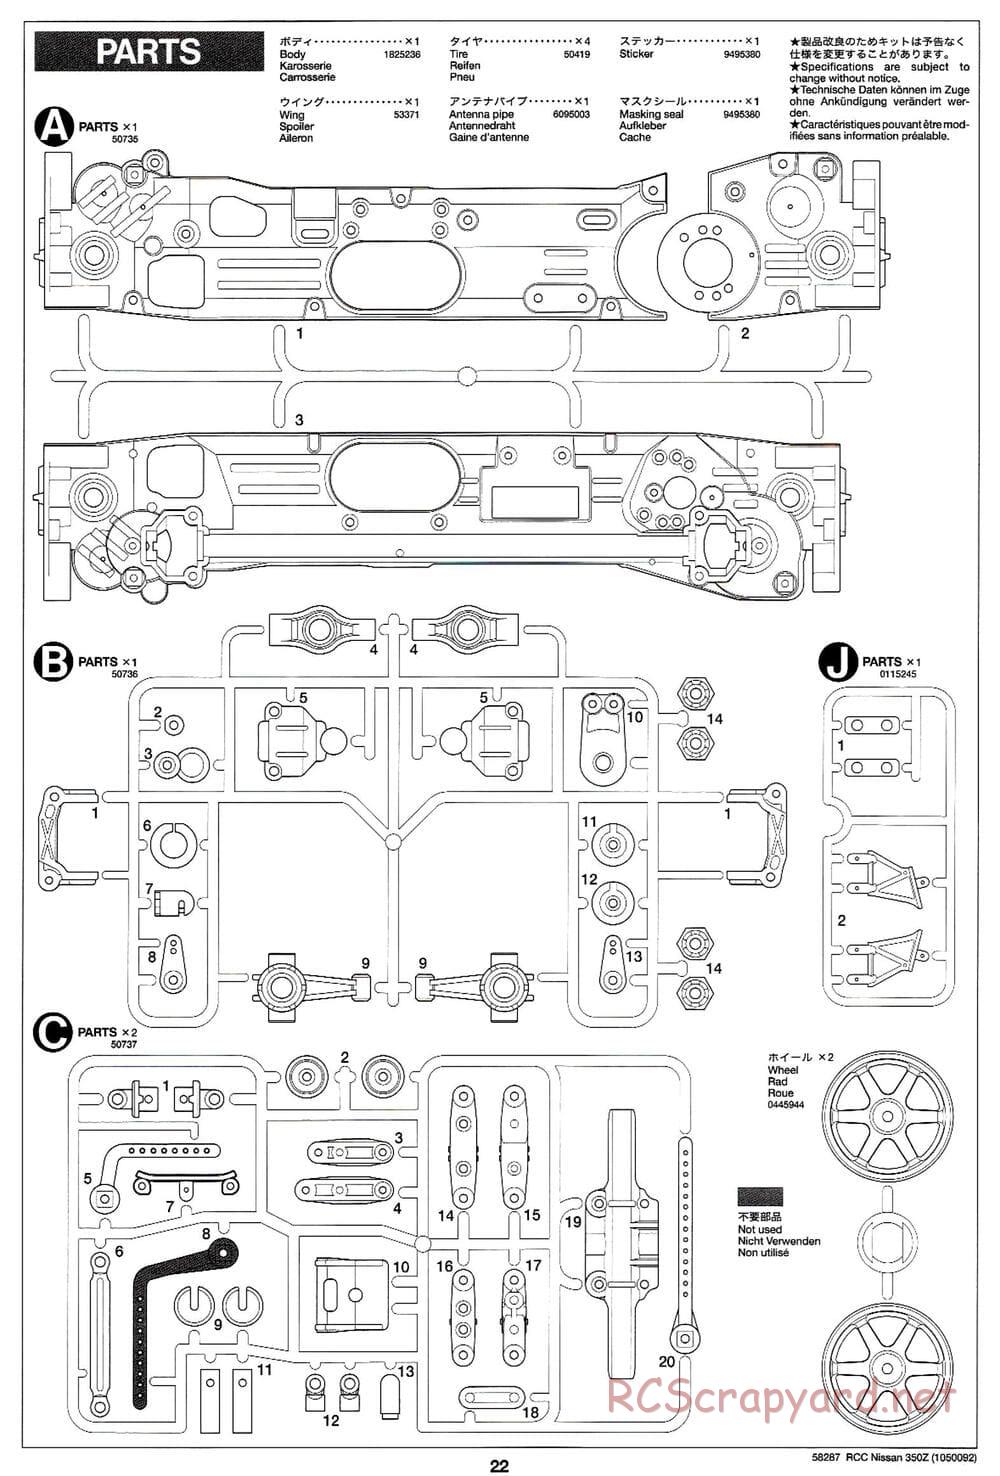 Tamiya - Nissan 350Z - TL-01 Chassis - Manual - Page 22